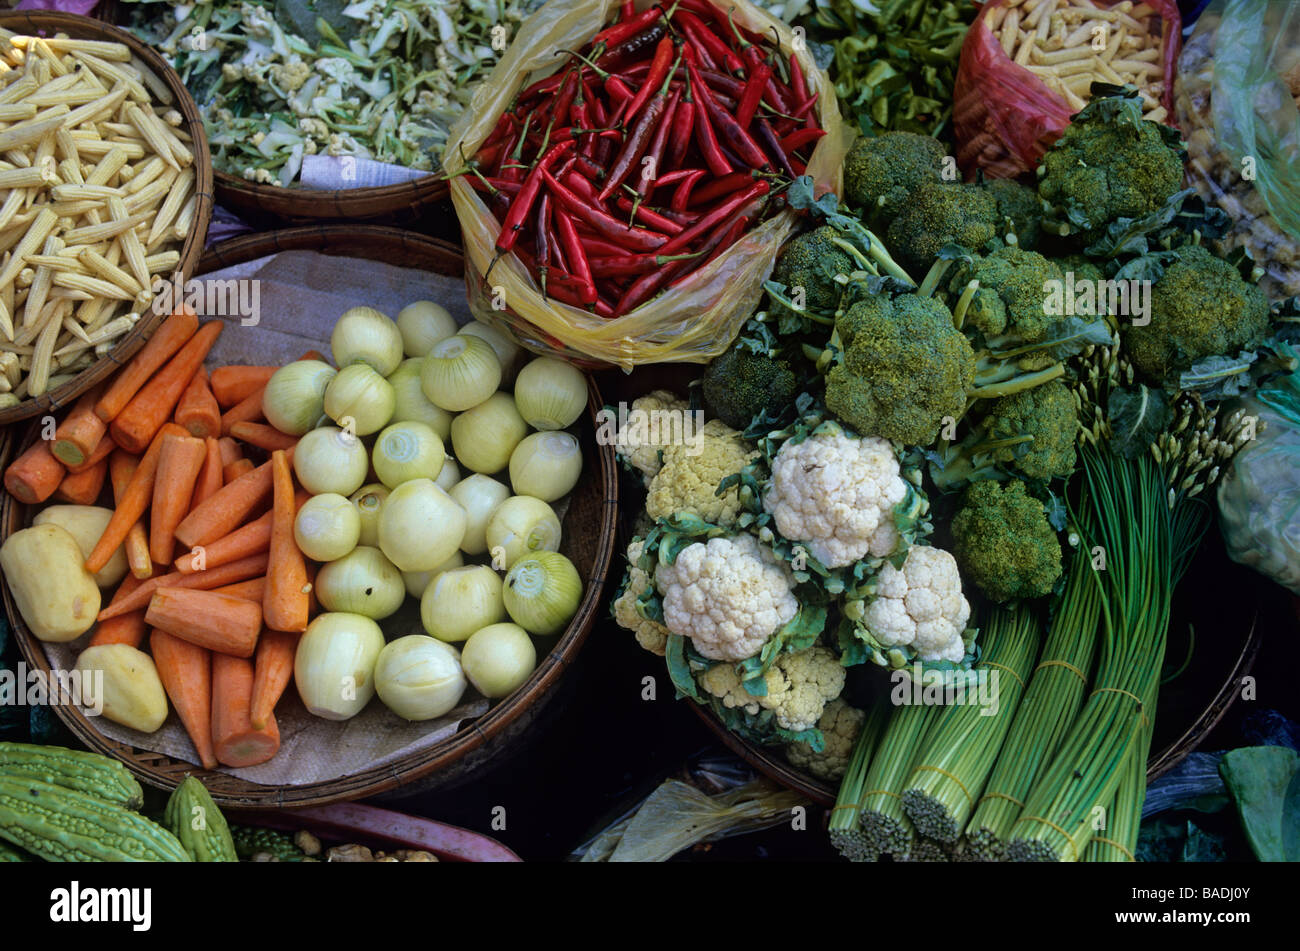 Kambodscha, Phnom Penh, Markt, hautnah auf einem Gemüse stall Stockfoto